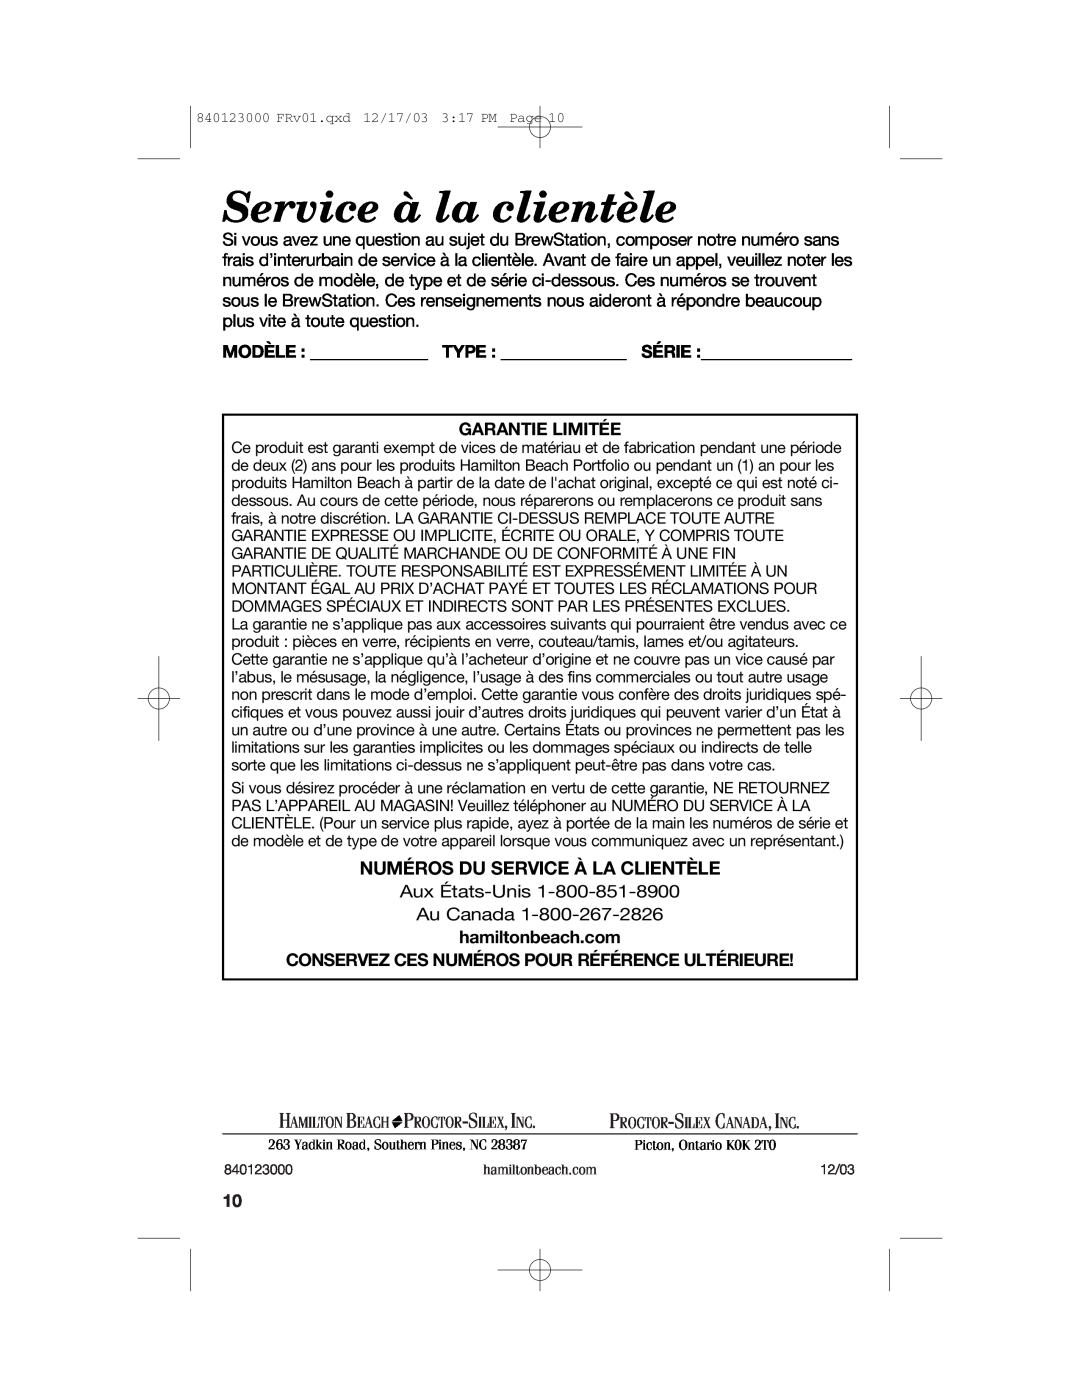 Hamilton Beach 840123000 Service à la clientèle, Numéros Du Service À La Clientèle, Modèle Type Série Garantie Limitée 